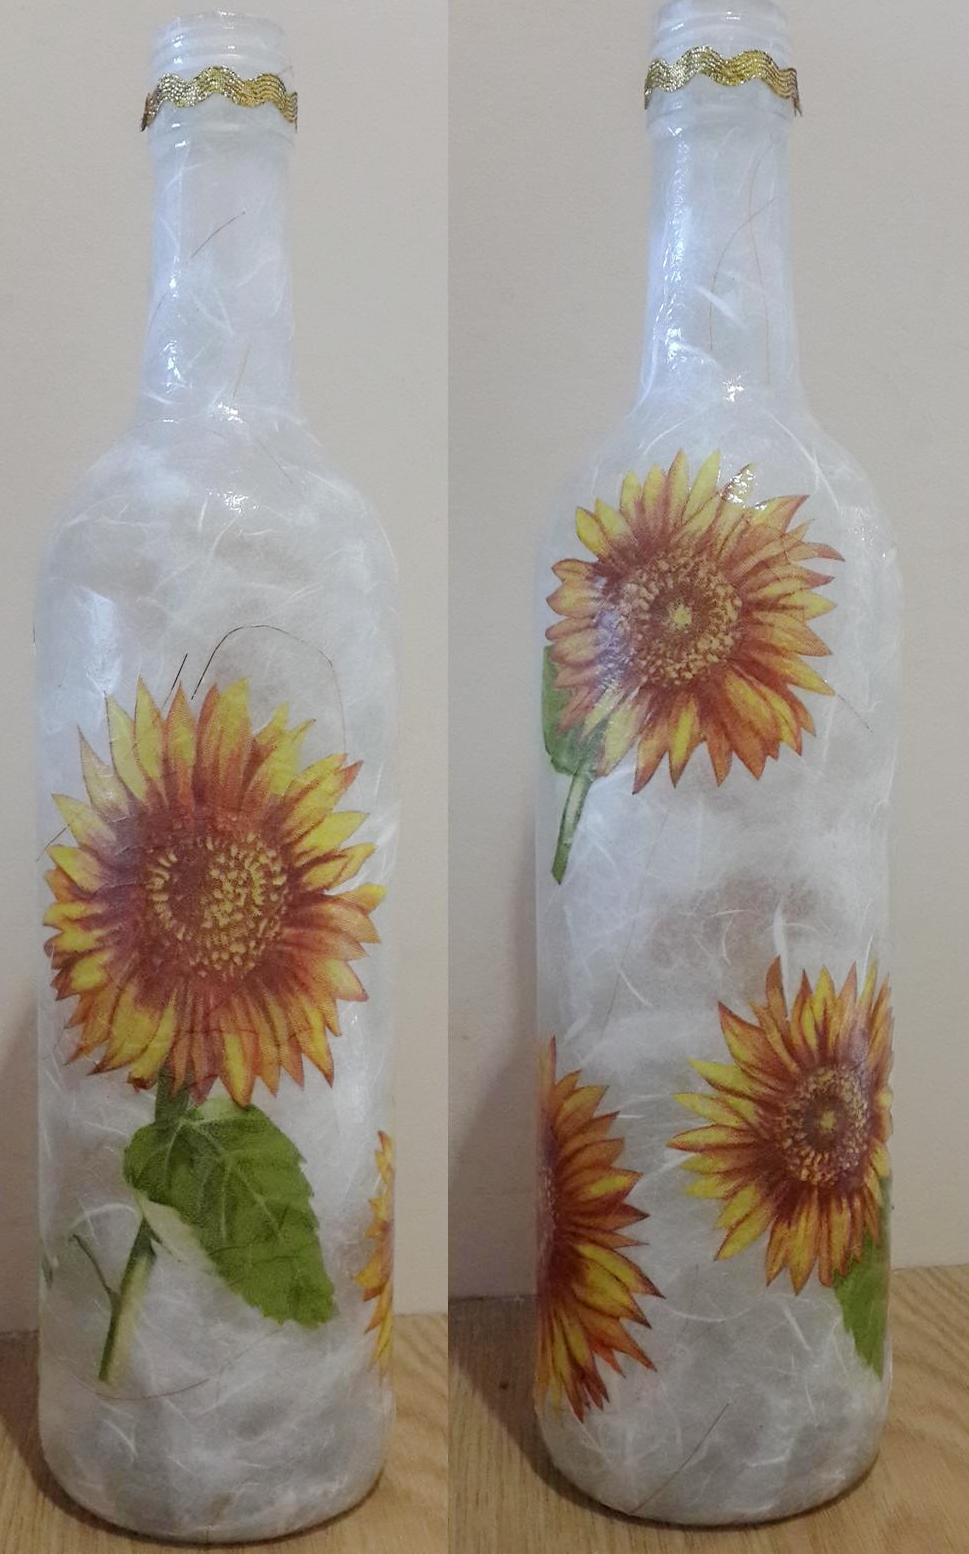 Sunflower bottle